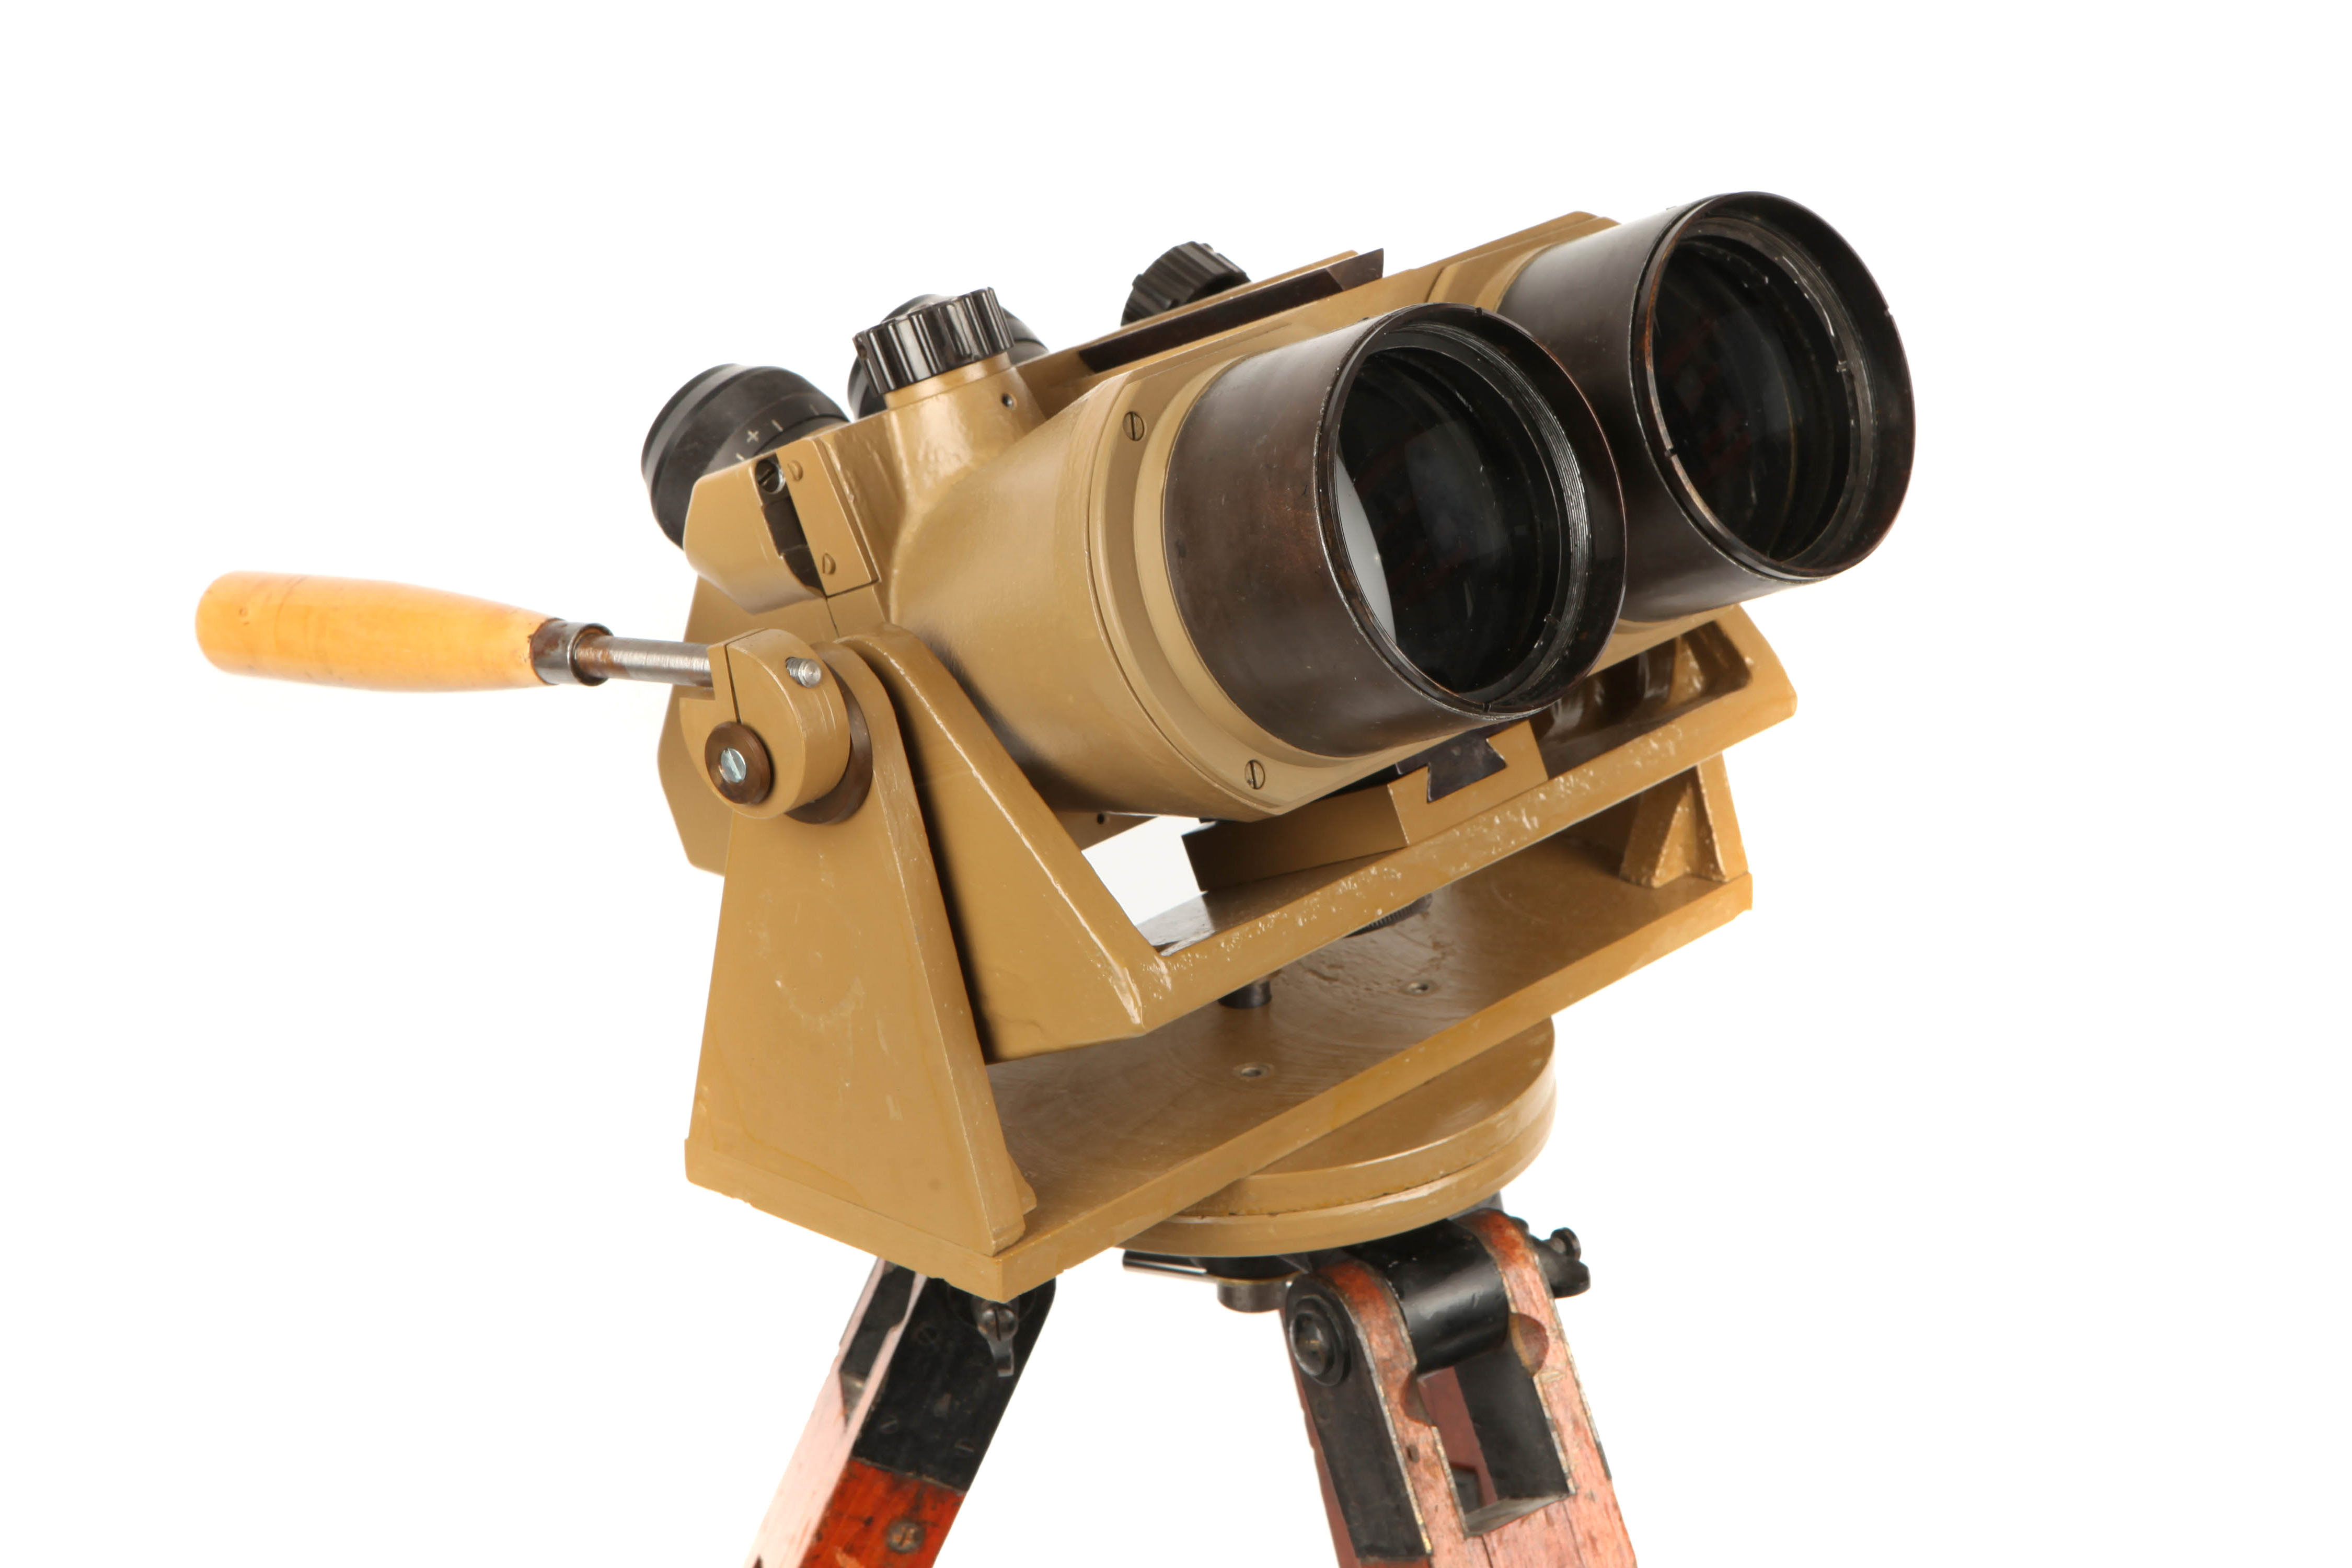 A Pair of 10x80 German Flak Binoculars, - Image 2 of 4